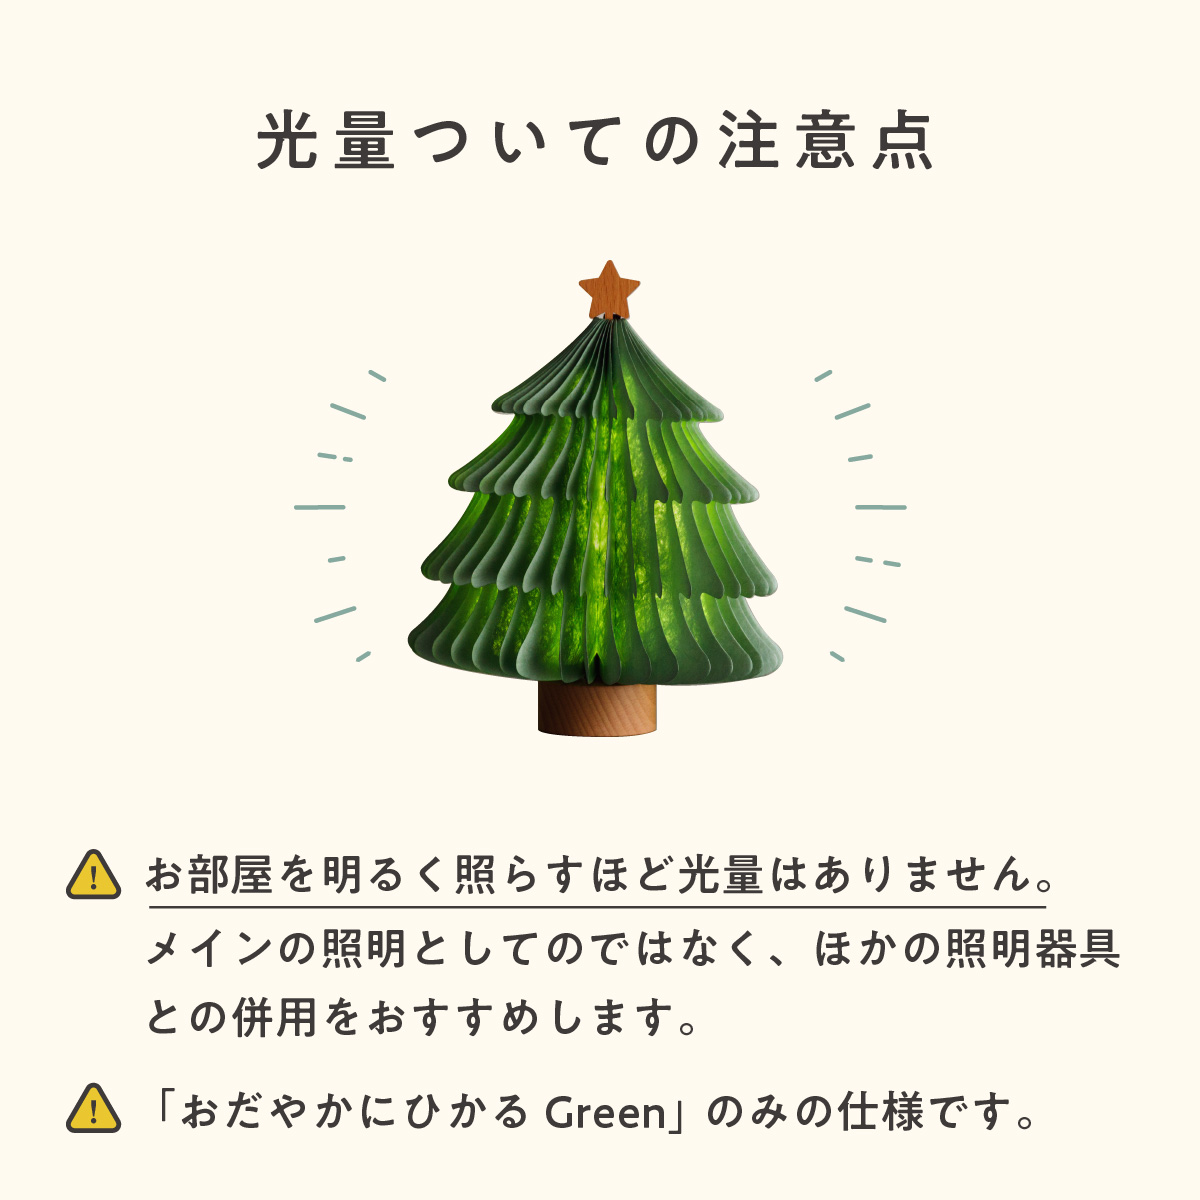 クリスマスツリー 卓上折りたたみ式 ペーパーツリーライト prefer fuku